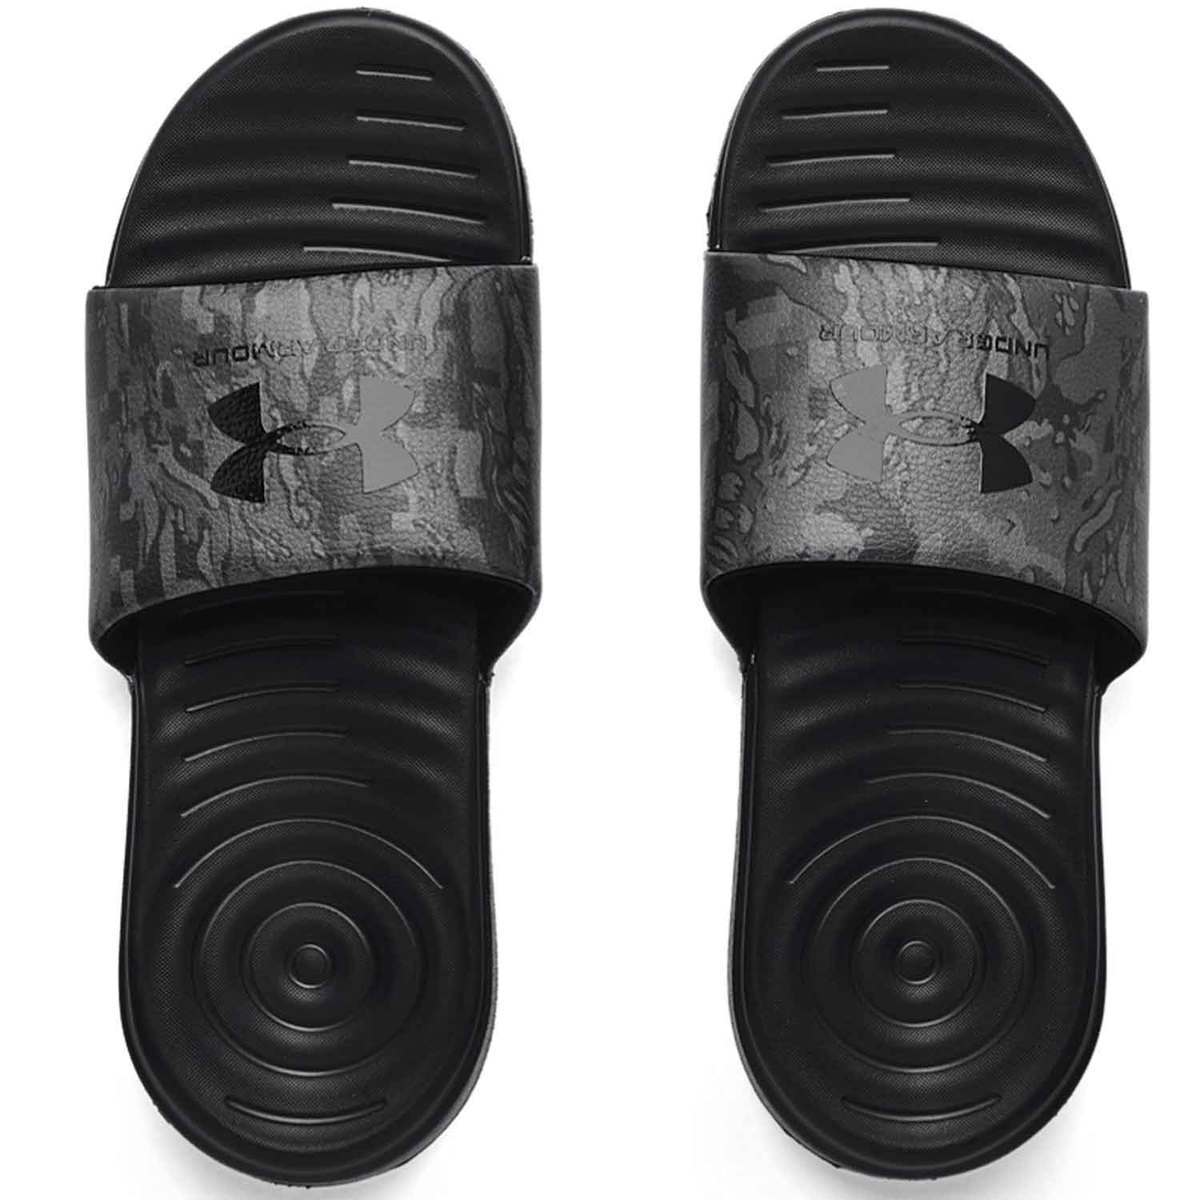 Under Armour Men's Ansa Graphic Slide Sandals - Black - Size 13 - Black ...